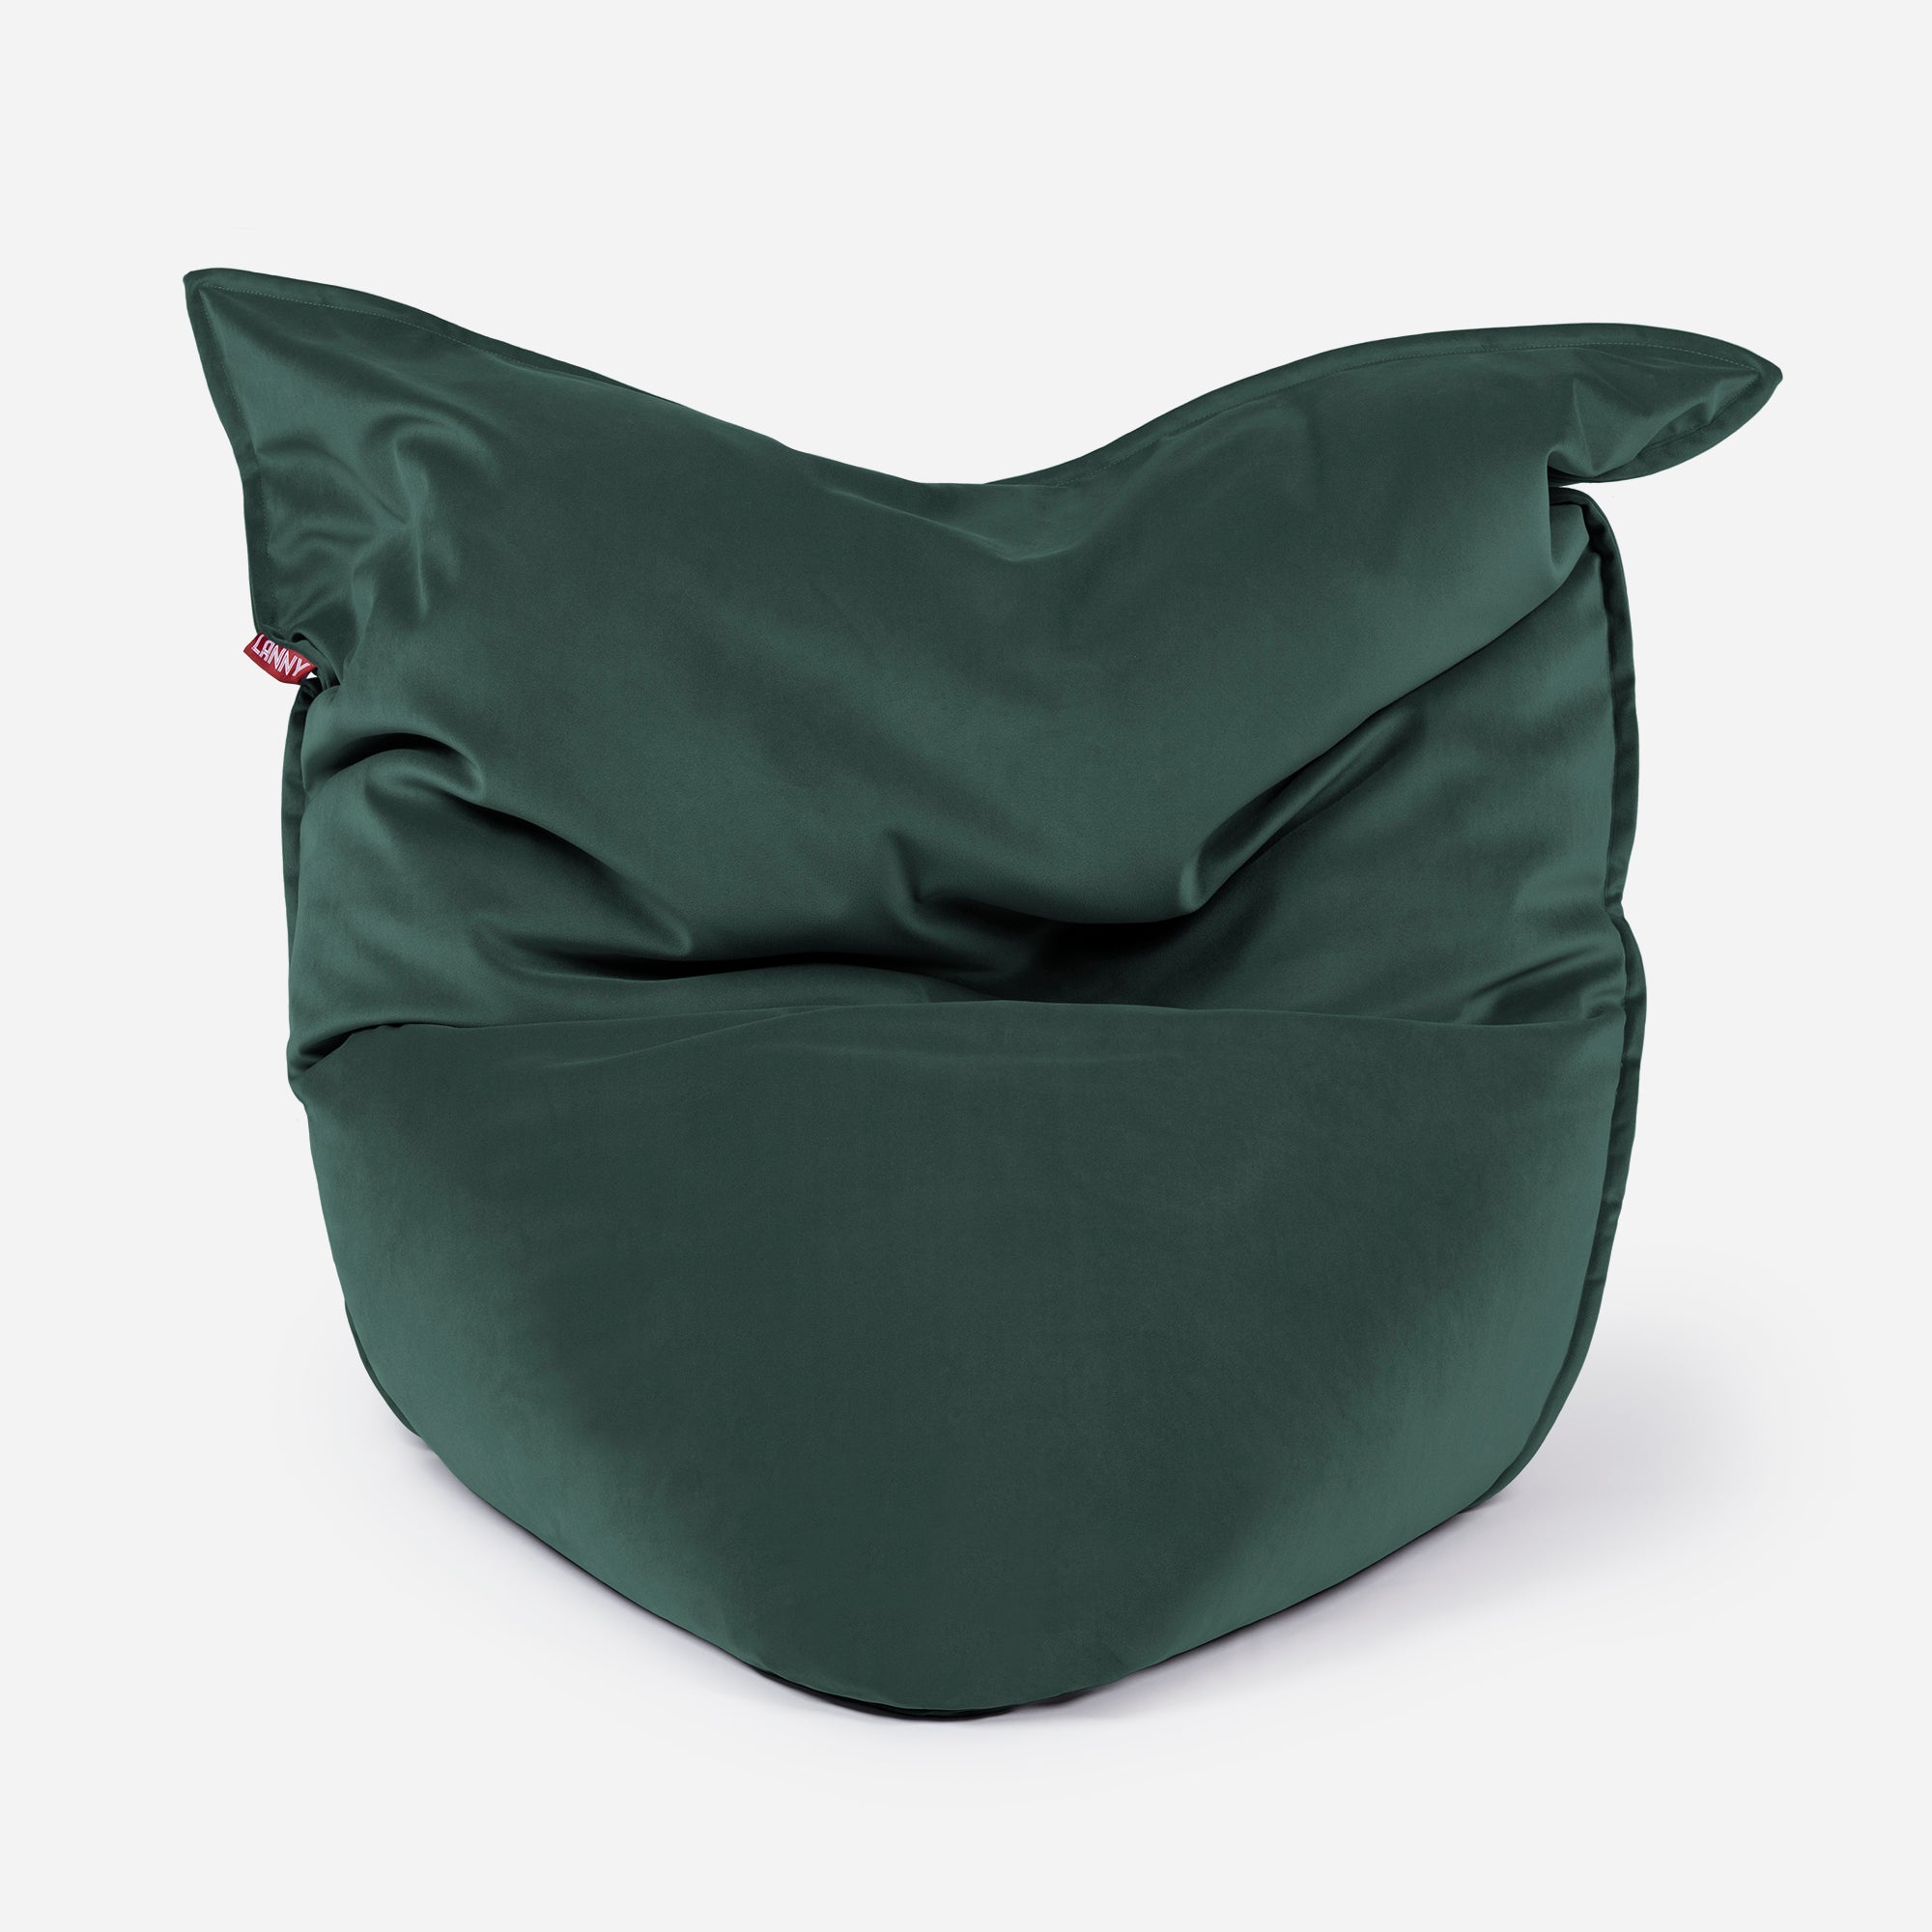 Sloppy Velvet Green Bean bag